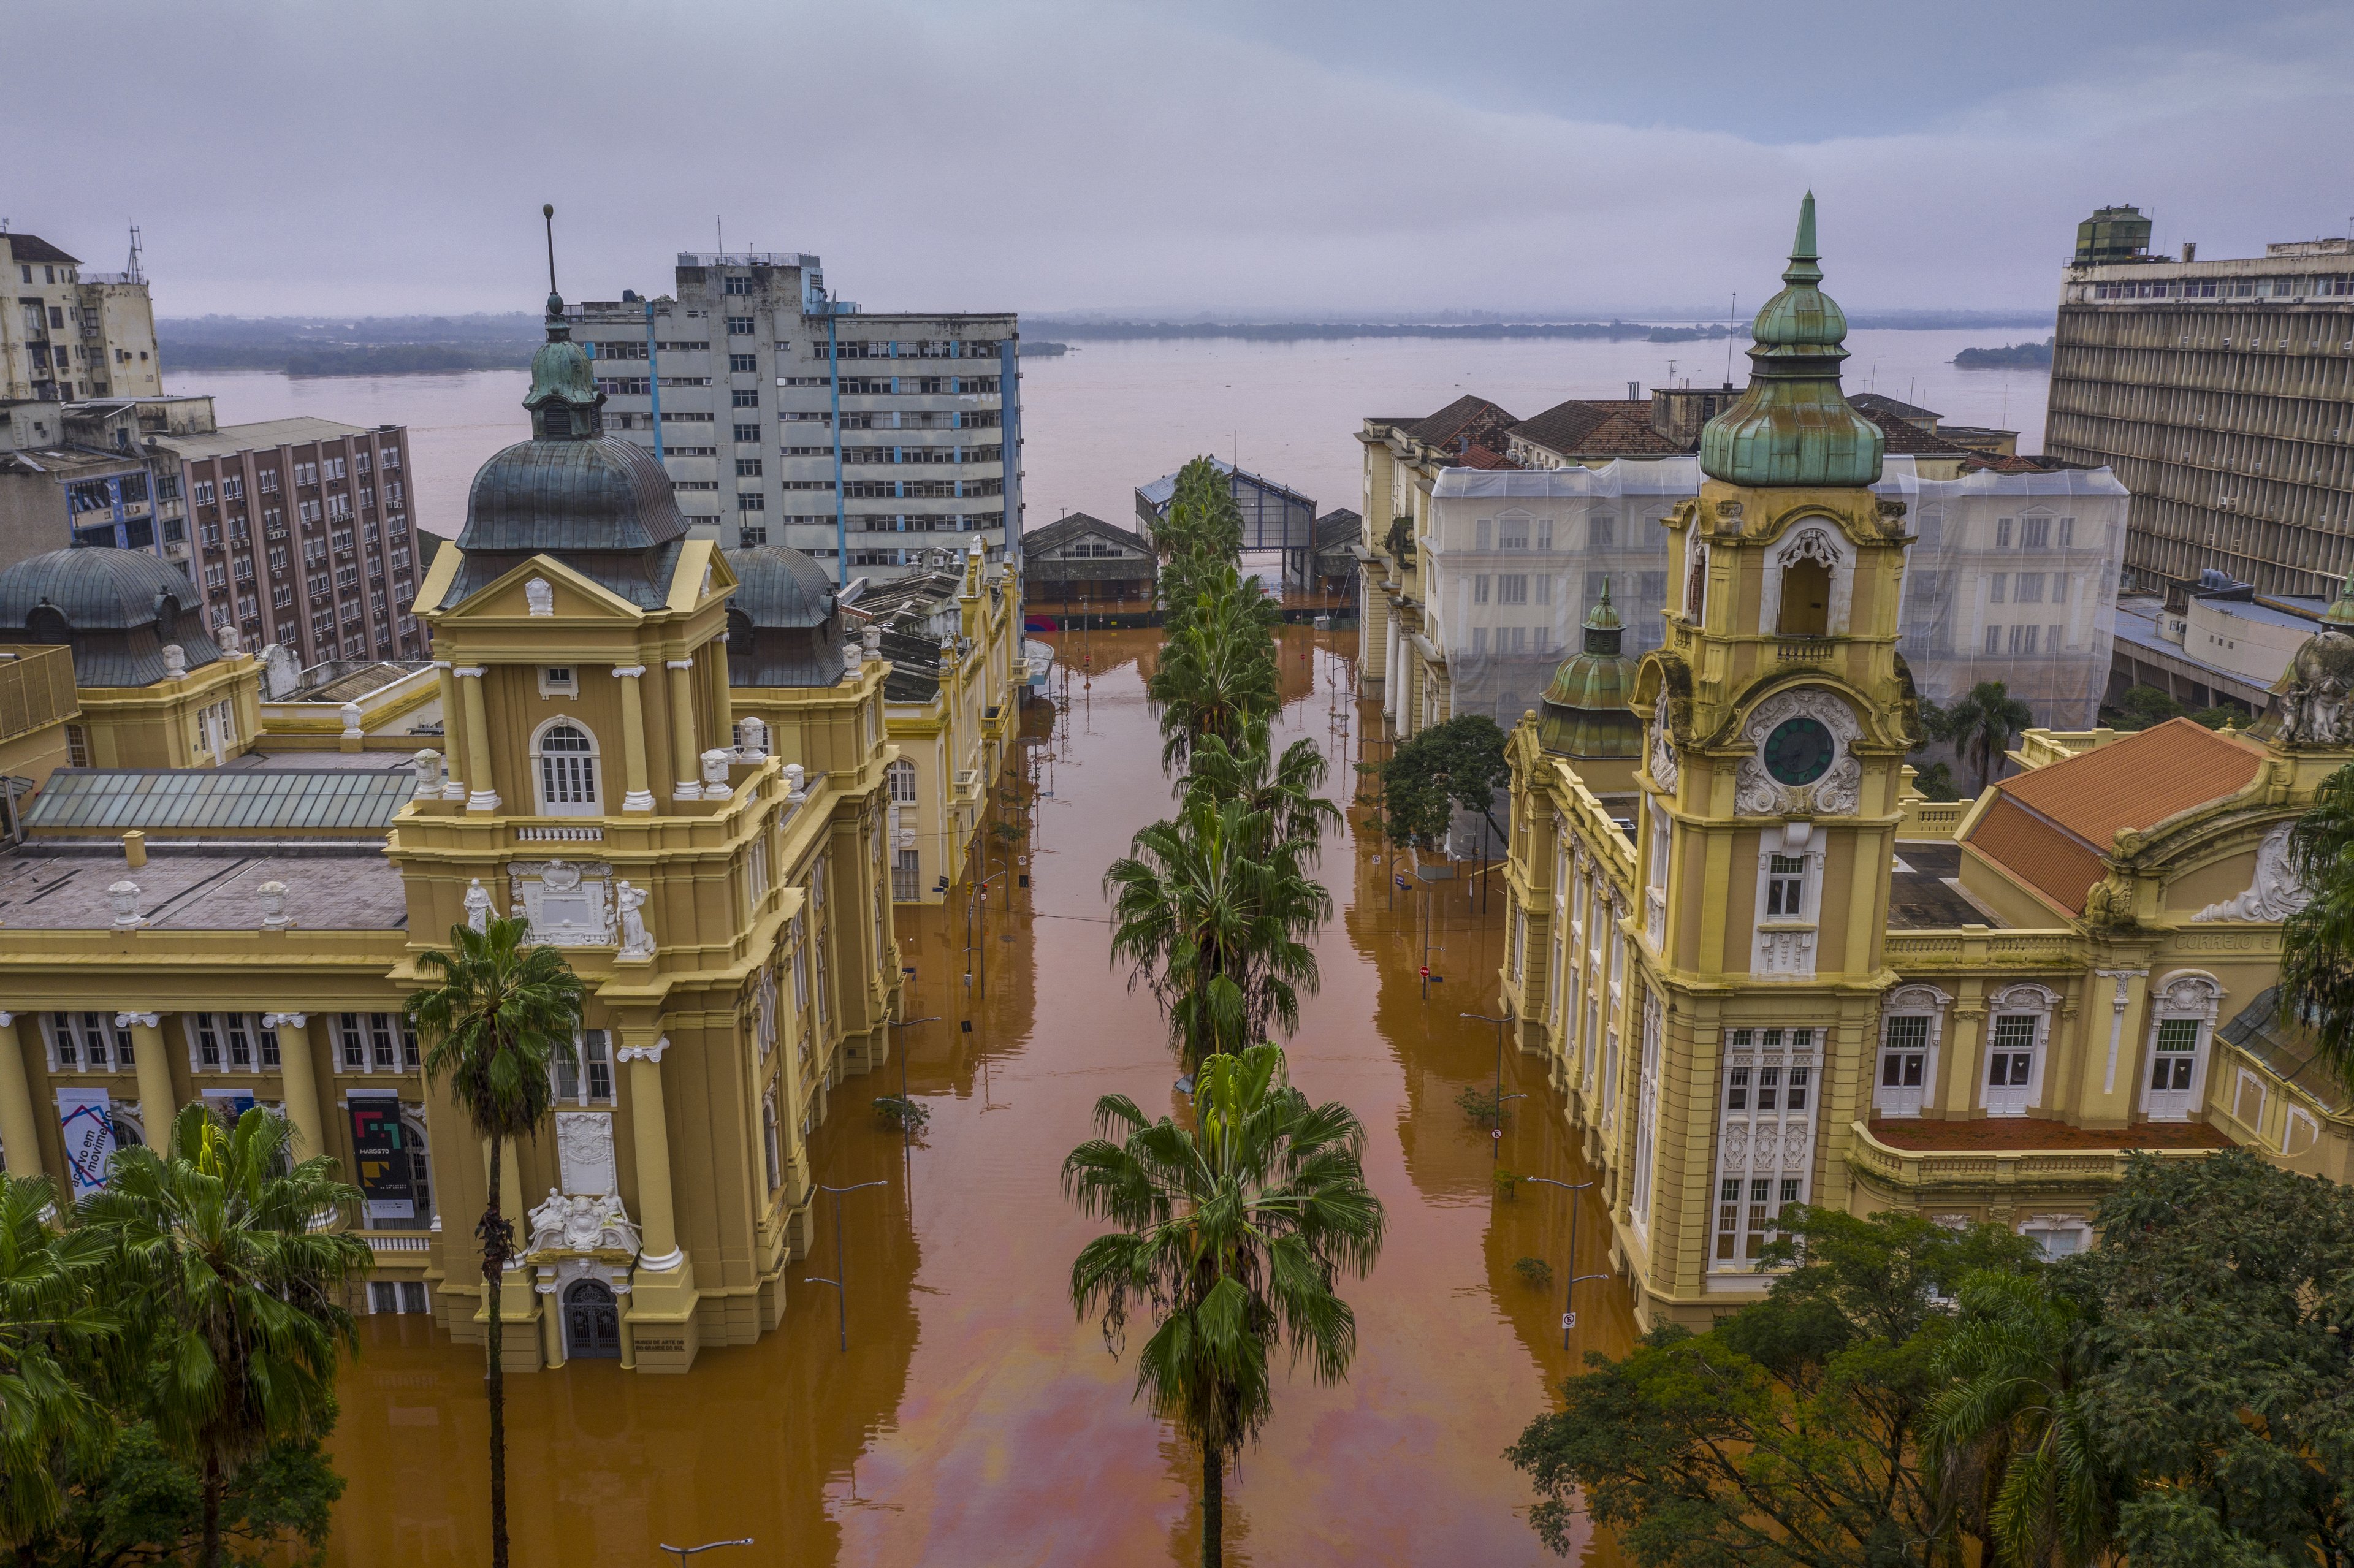 Vista aérea do Museu de Arte do Rio Grande do Sul (MARGS) inundado no centro da cidade de Porto Alegre, Rio Grande do Sul.

